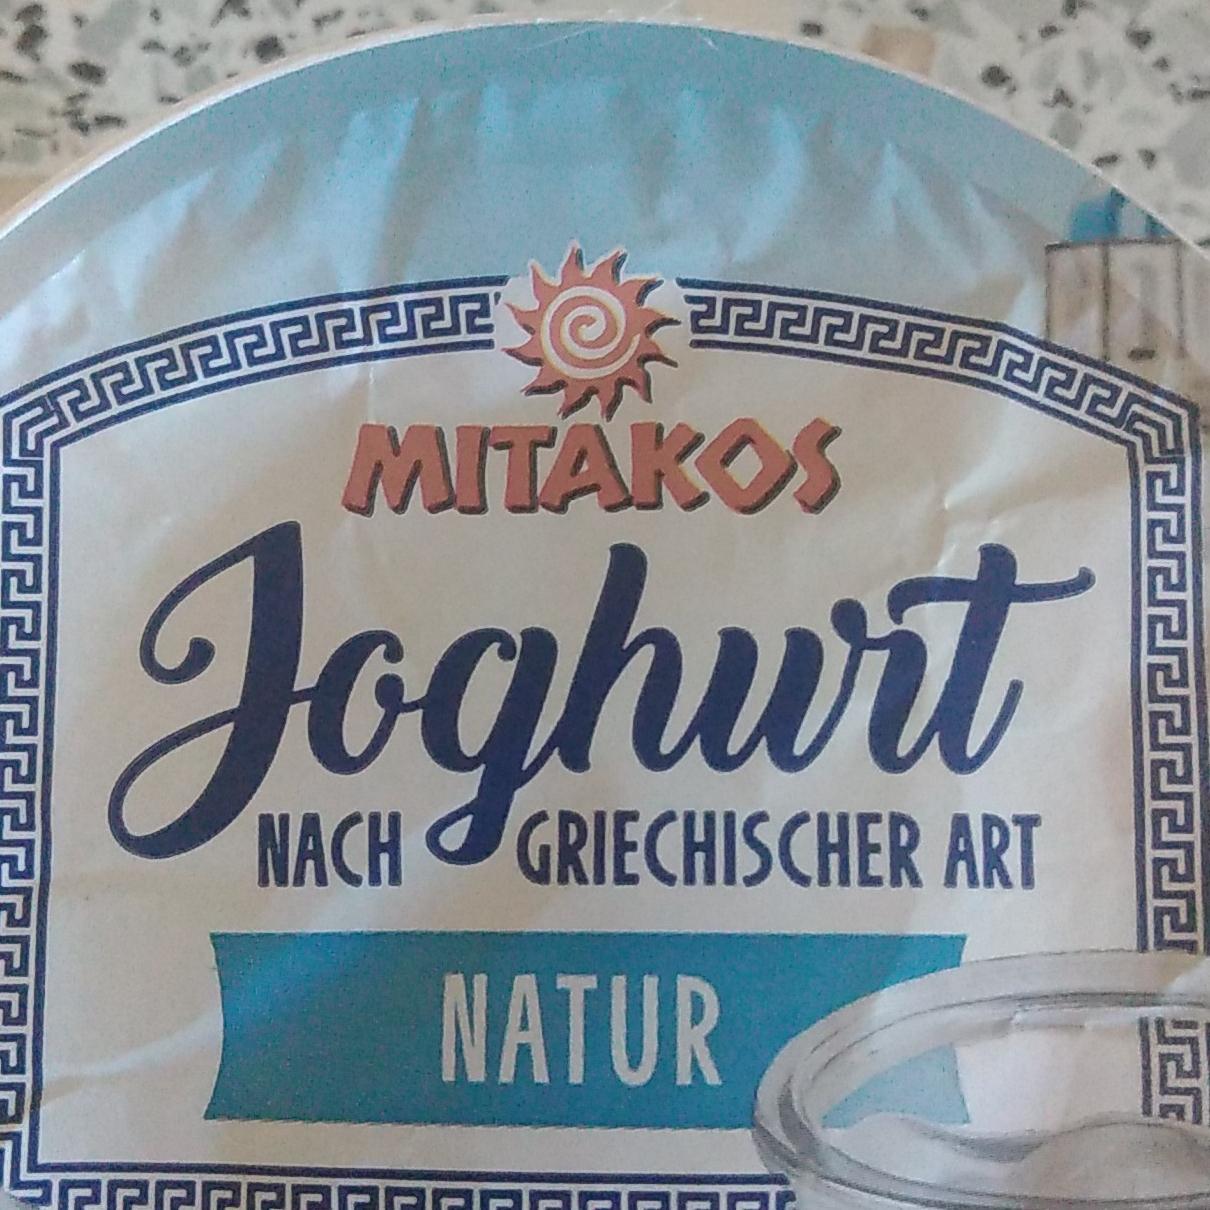 Fotografie - Joghurt nach griechischer Art Natur Mitakos